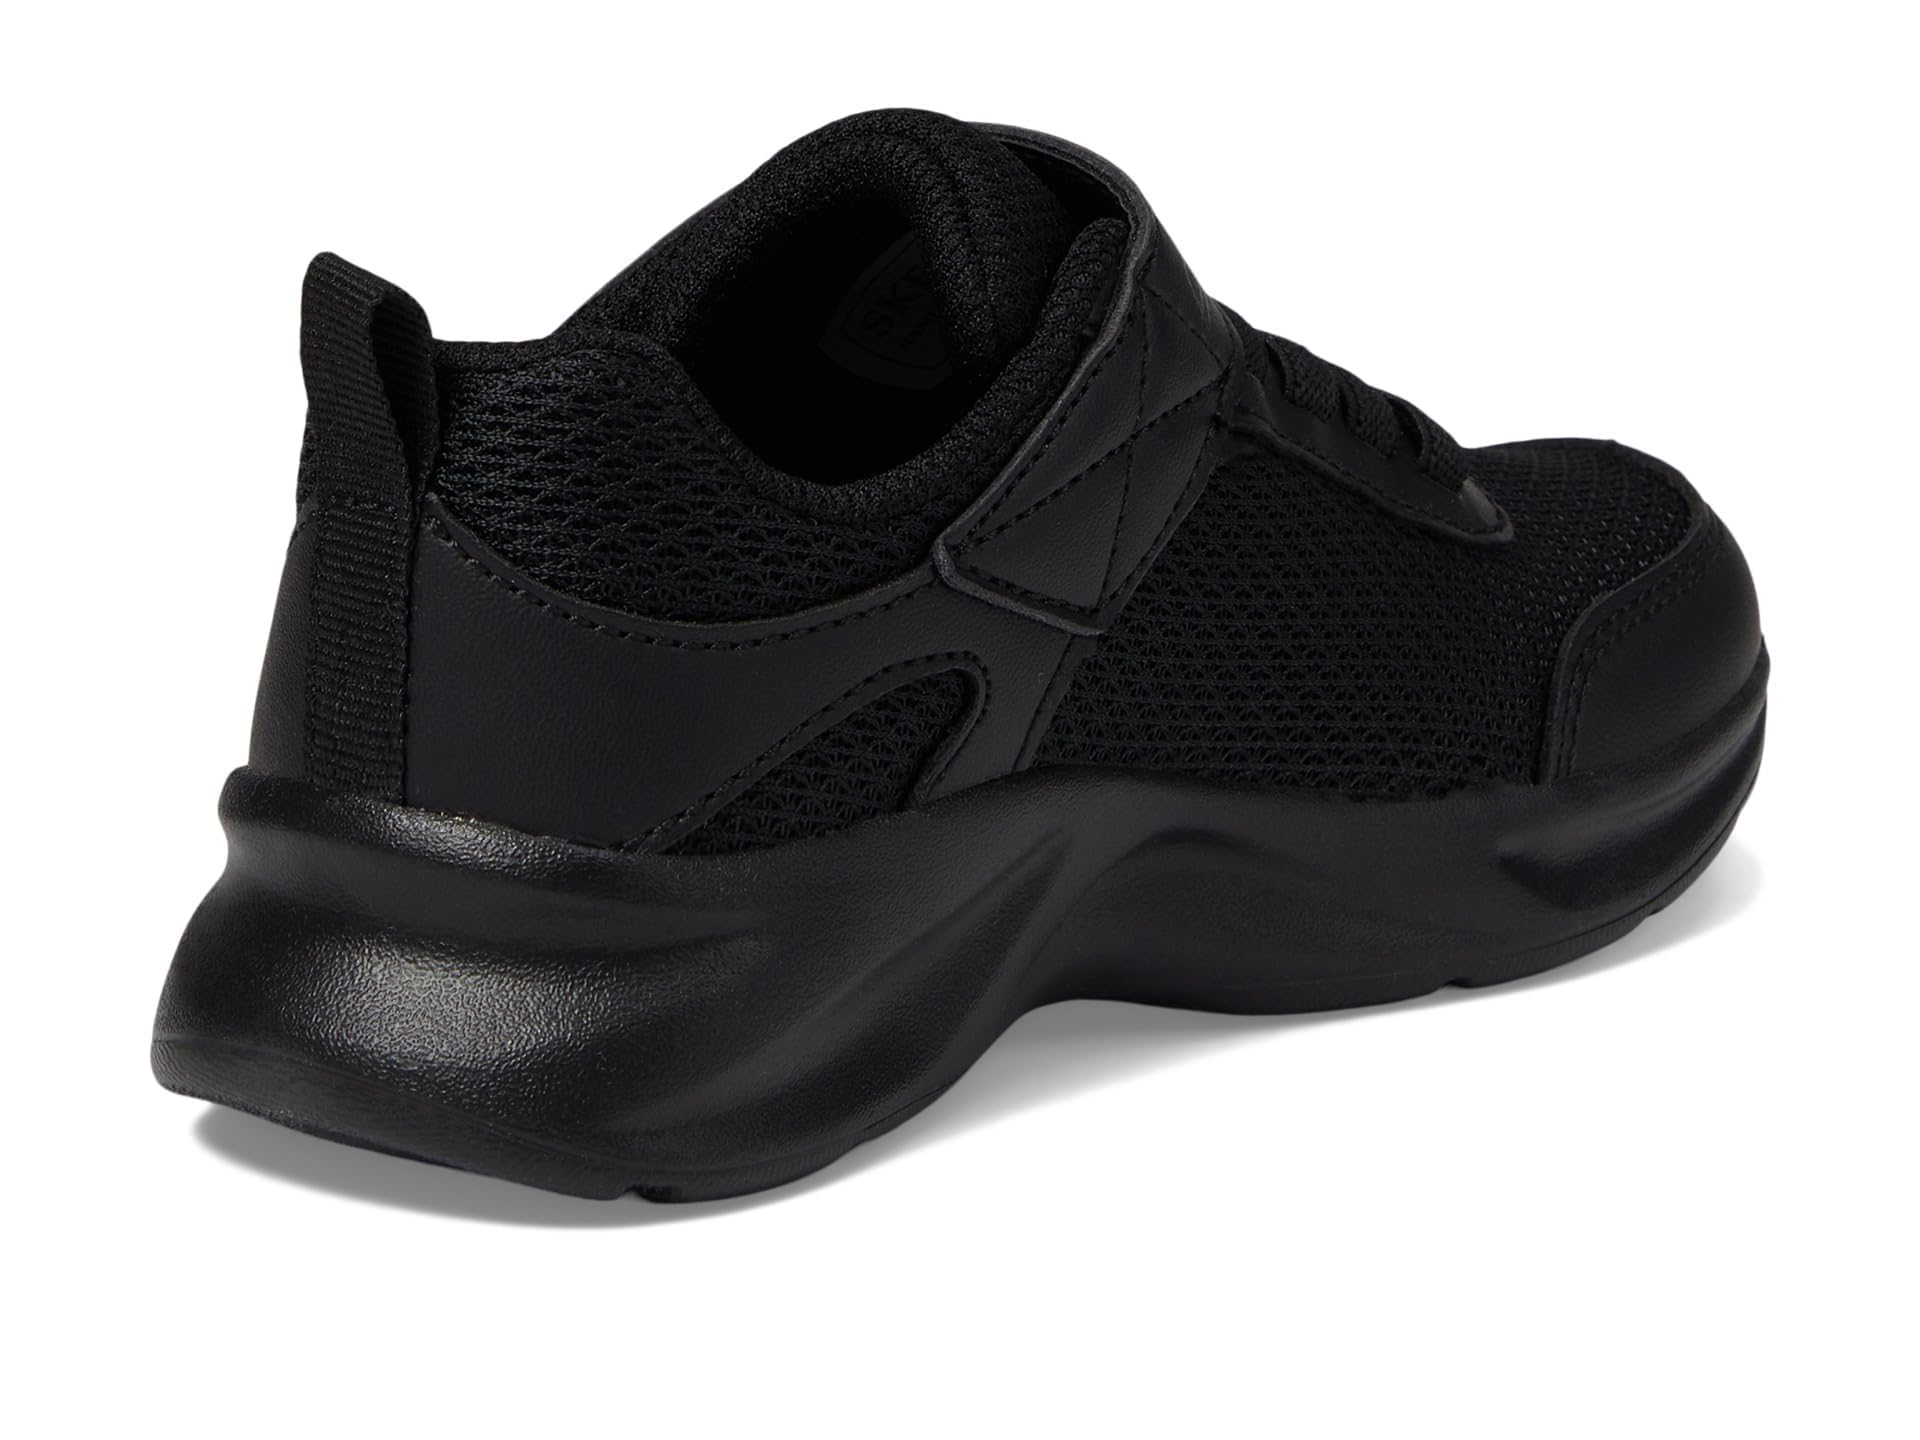 Skechers Boy's Dynamatic 1 Sneaker, Black/Black, 10.5 Little Kid